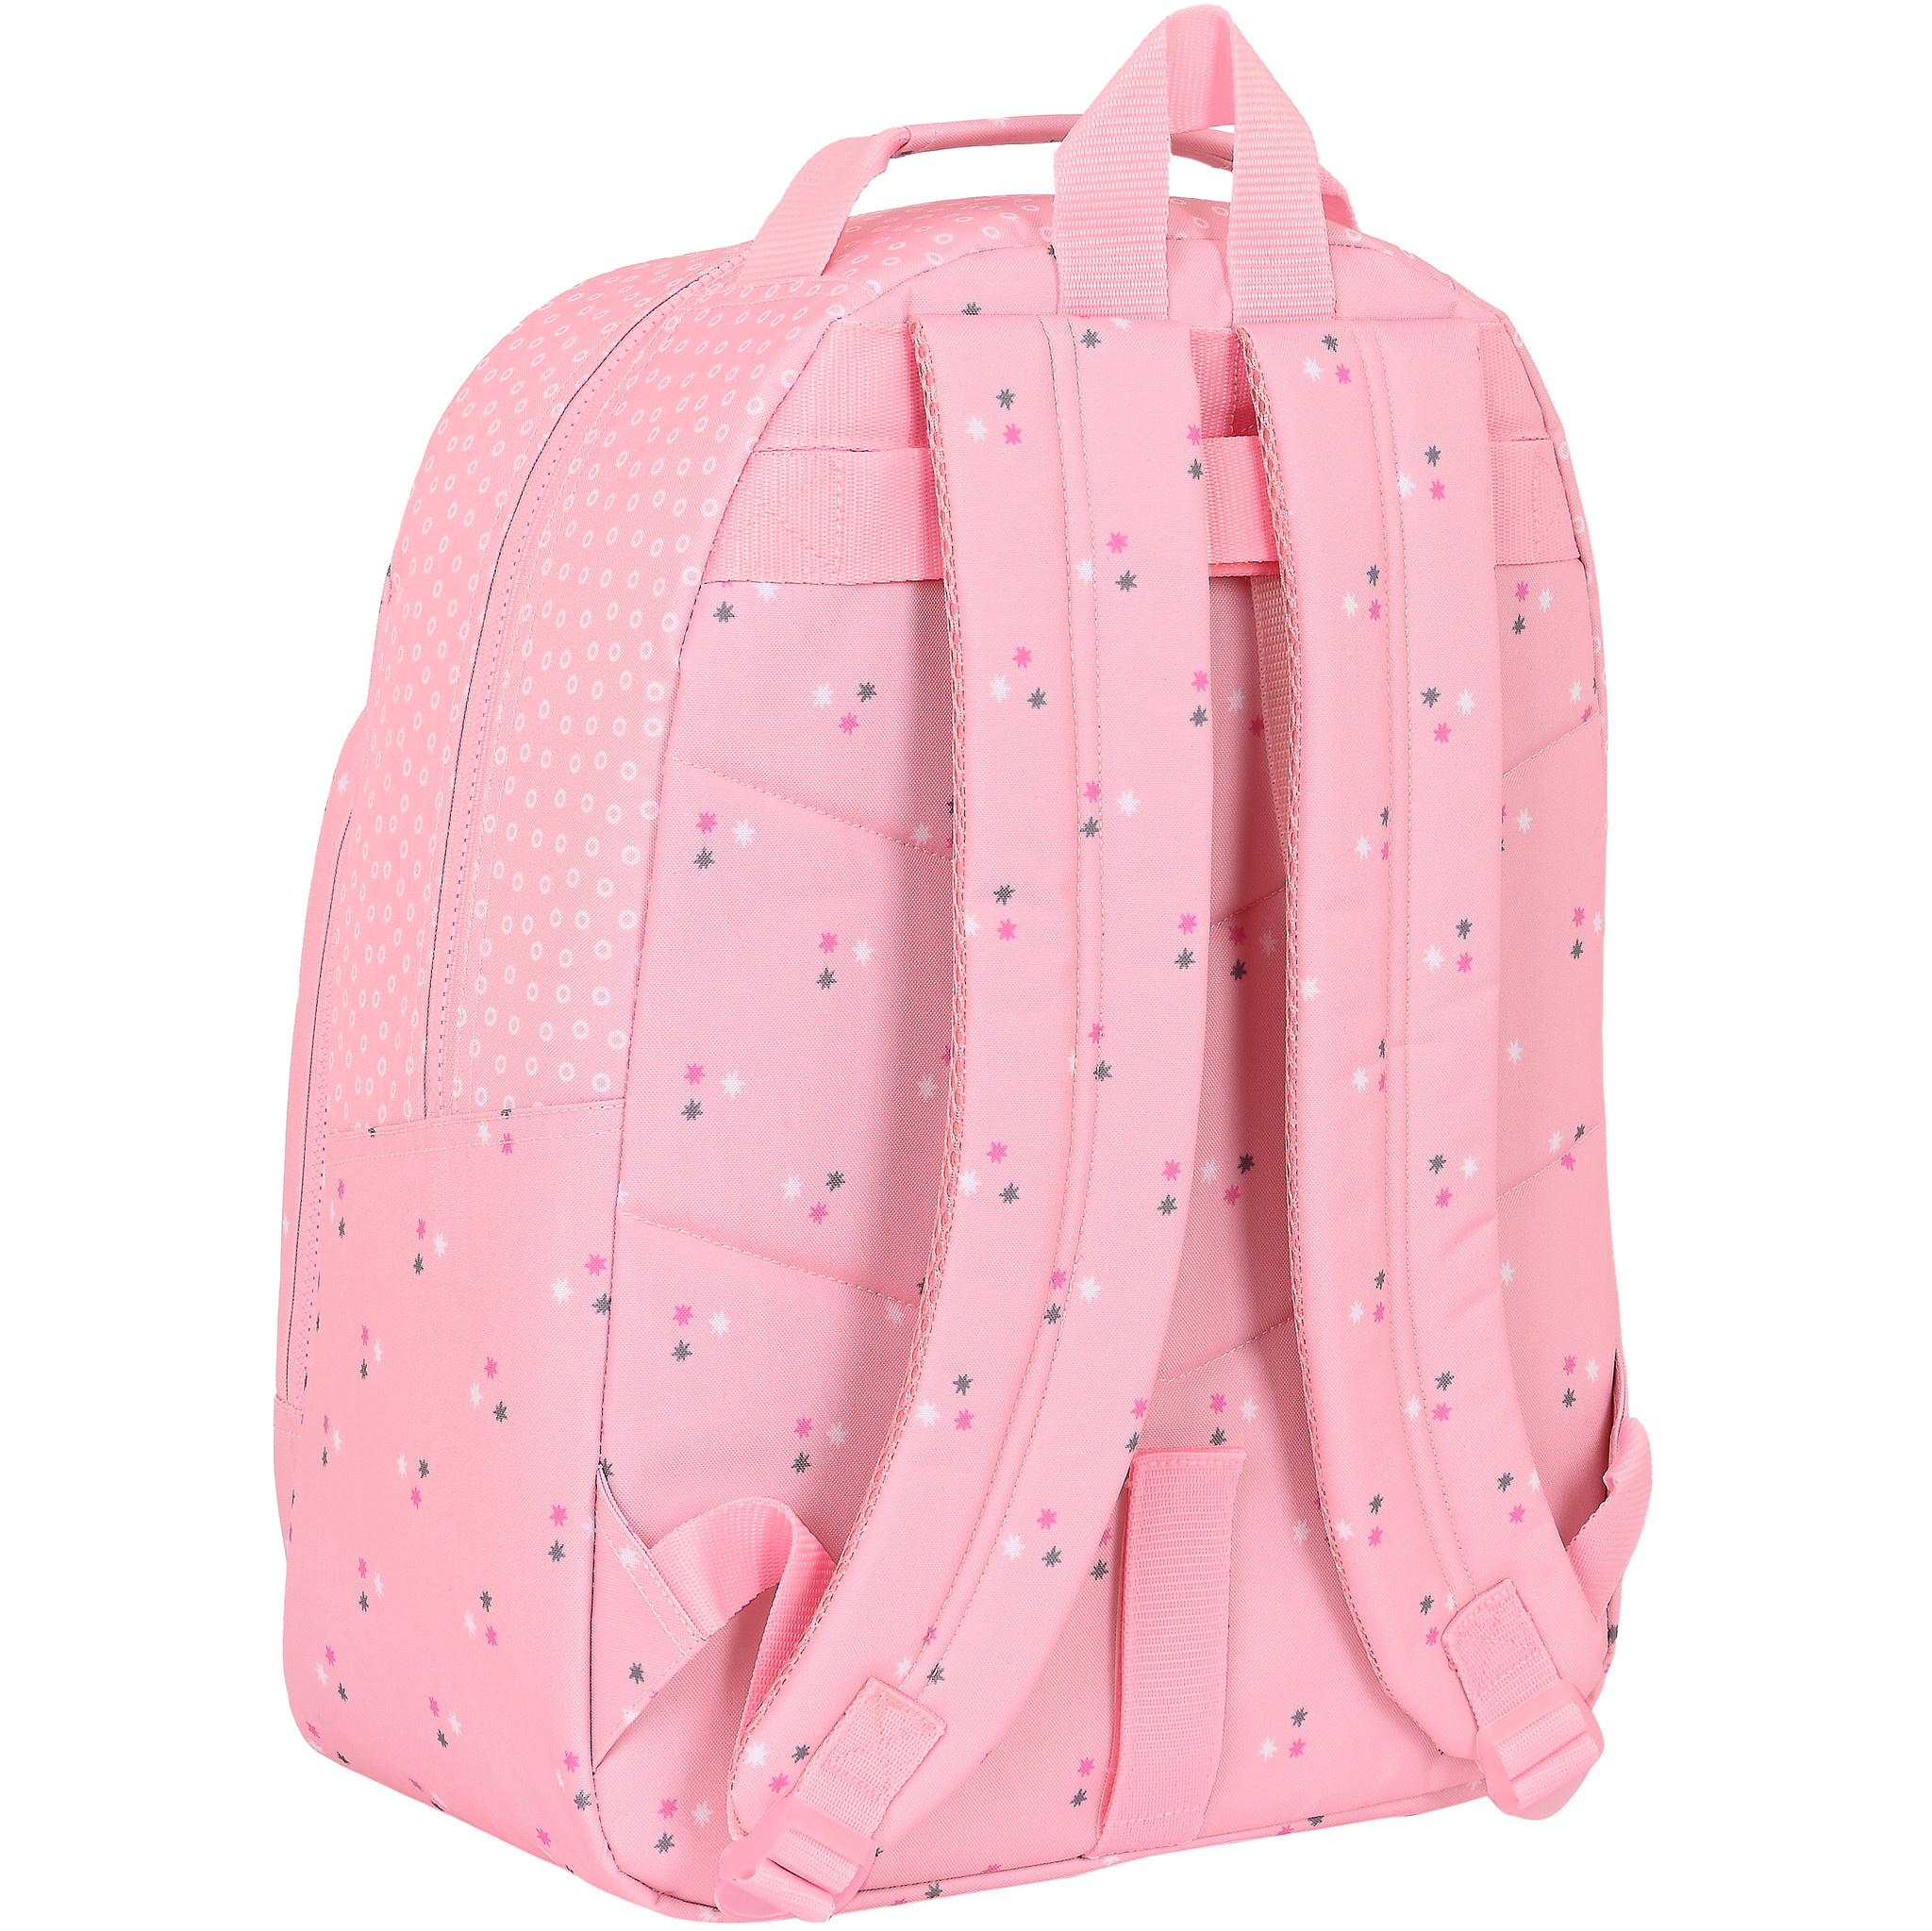 Safta Backpack Heart - 42 x 32 x 15 cm - Polyester